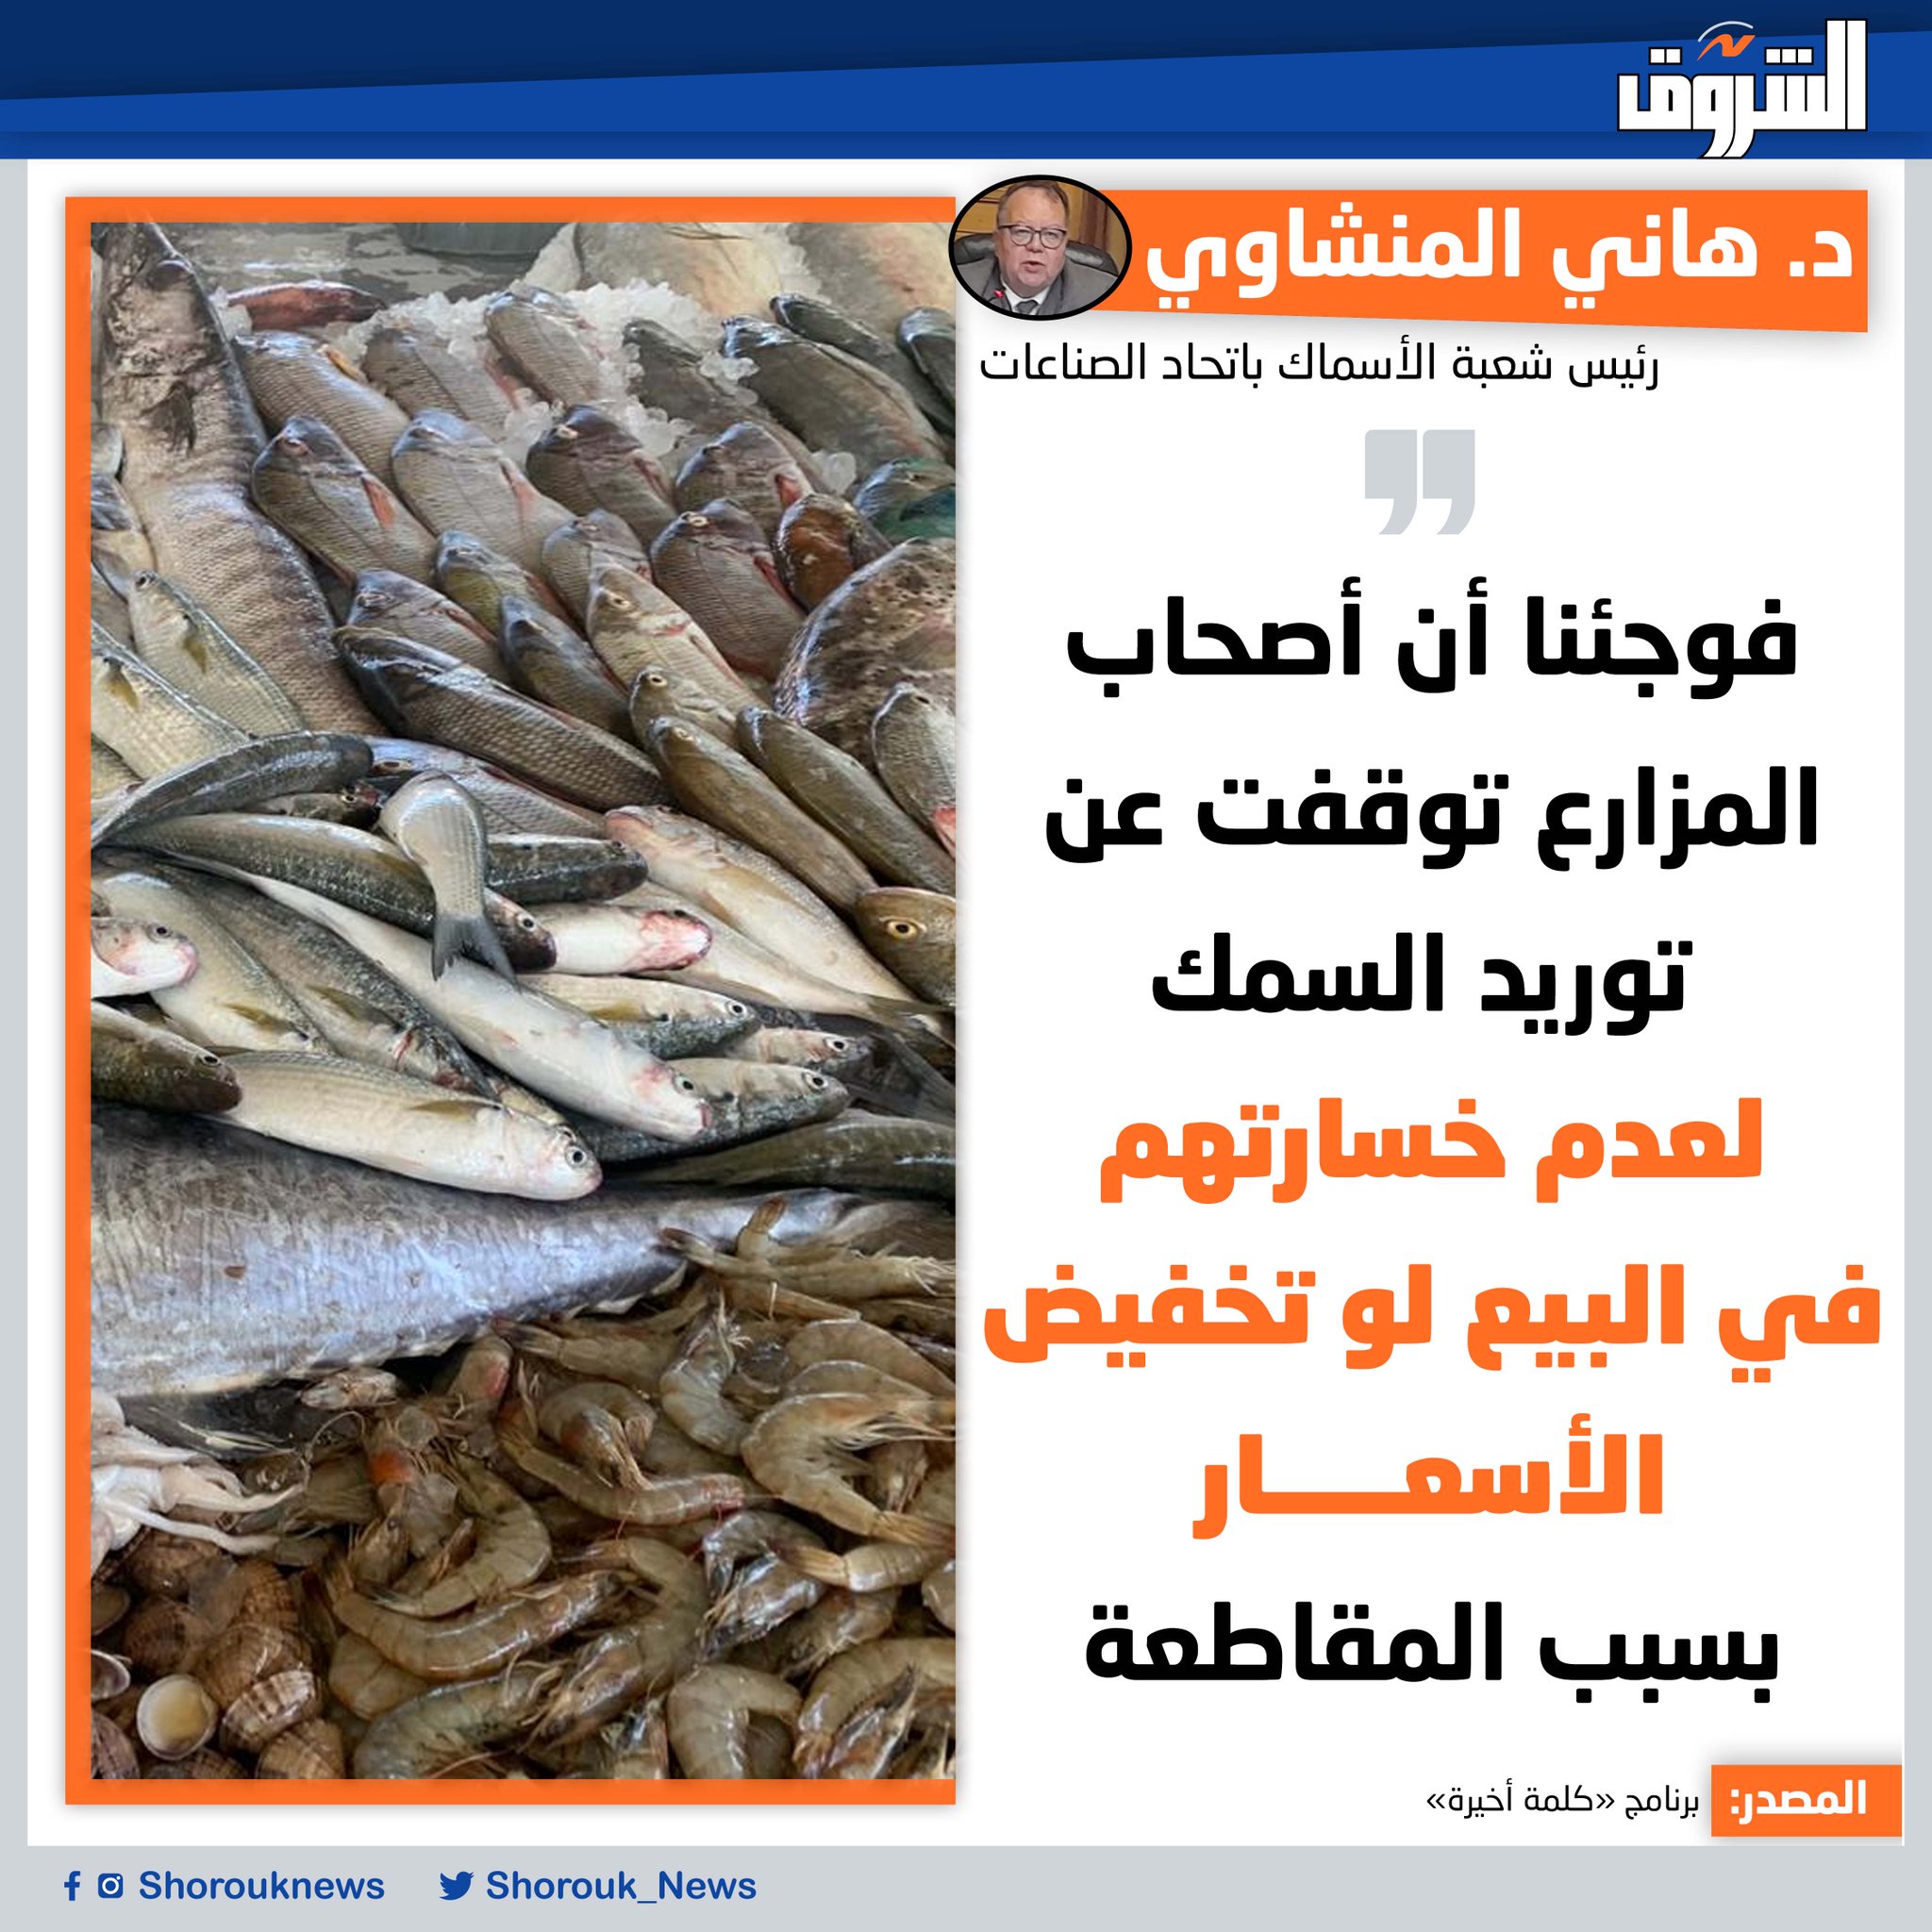 الدكتور هاني المنشاوي رئيس شعبة الأسماك باتحاد الصناعات: فوجئنا أن أصحاب المزارع توقفت عن توريد السمك، لعدم خسارتهم في البيع لو تخفيض الأسعار؛ بسبب المقاطعة 